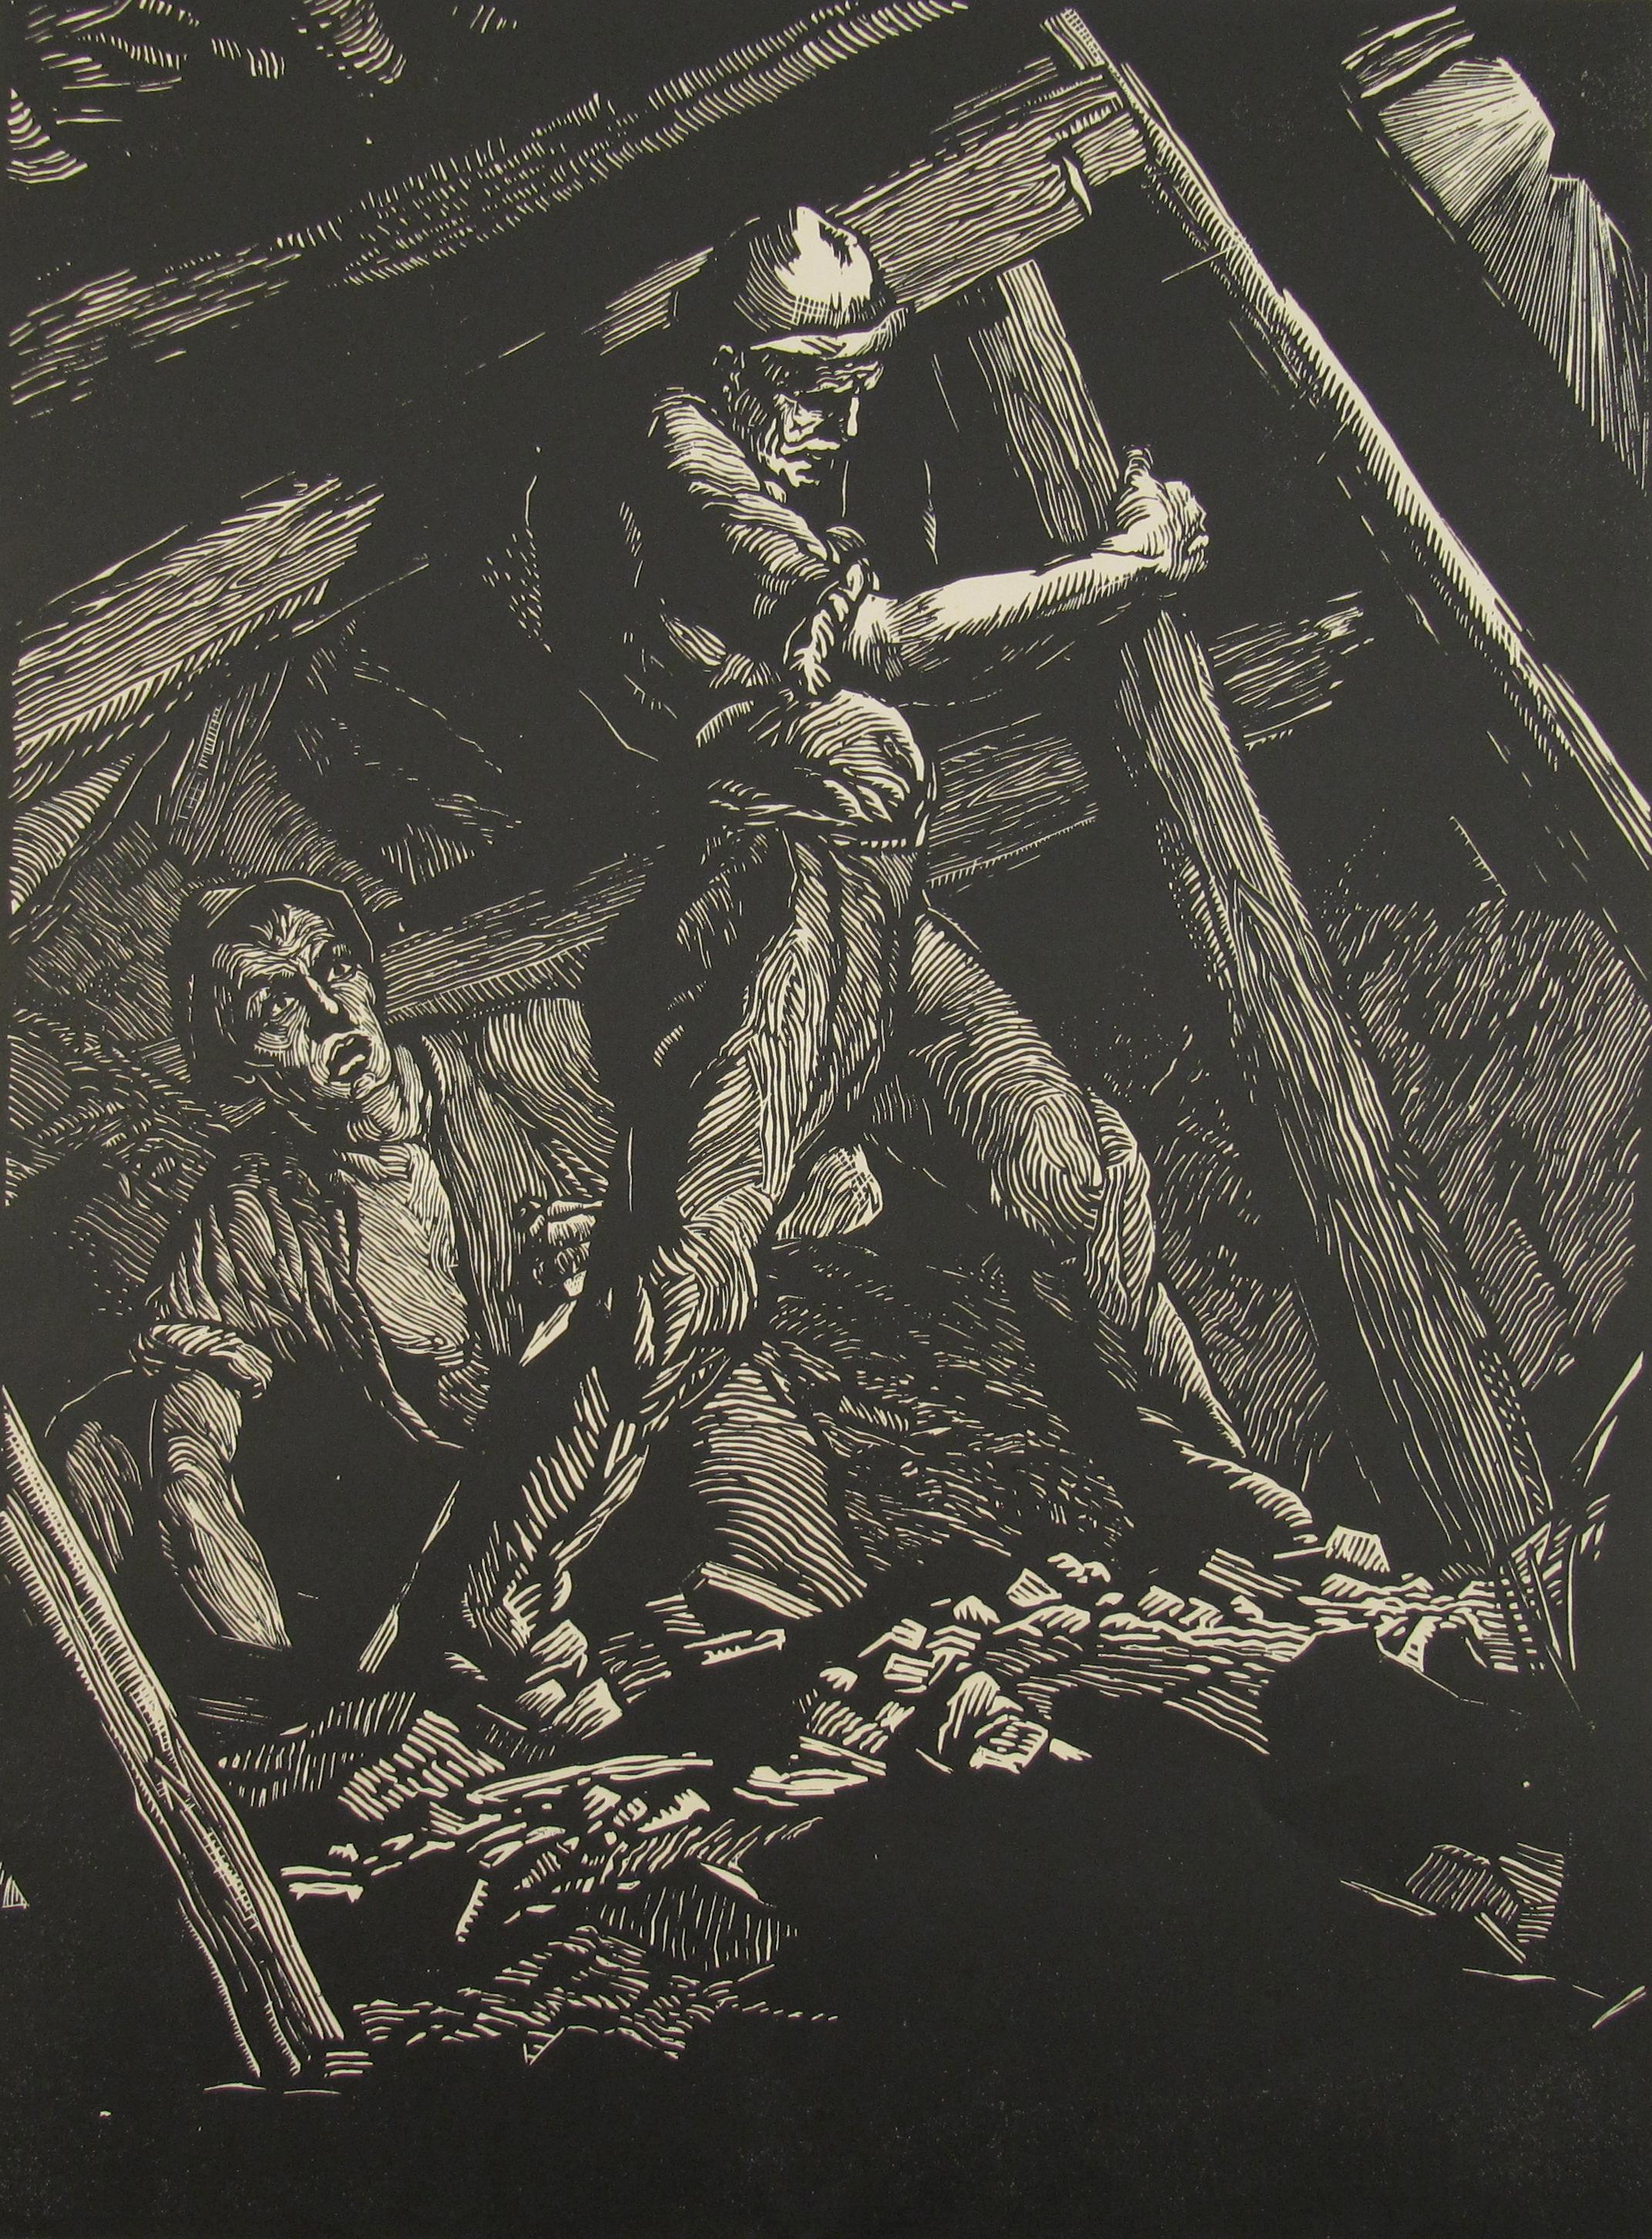 Hermann Katehön Figurative Print - Coal Miners - INDUSTRIAL ART - Pre War German School - Large signed Woodcut